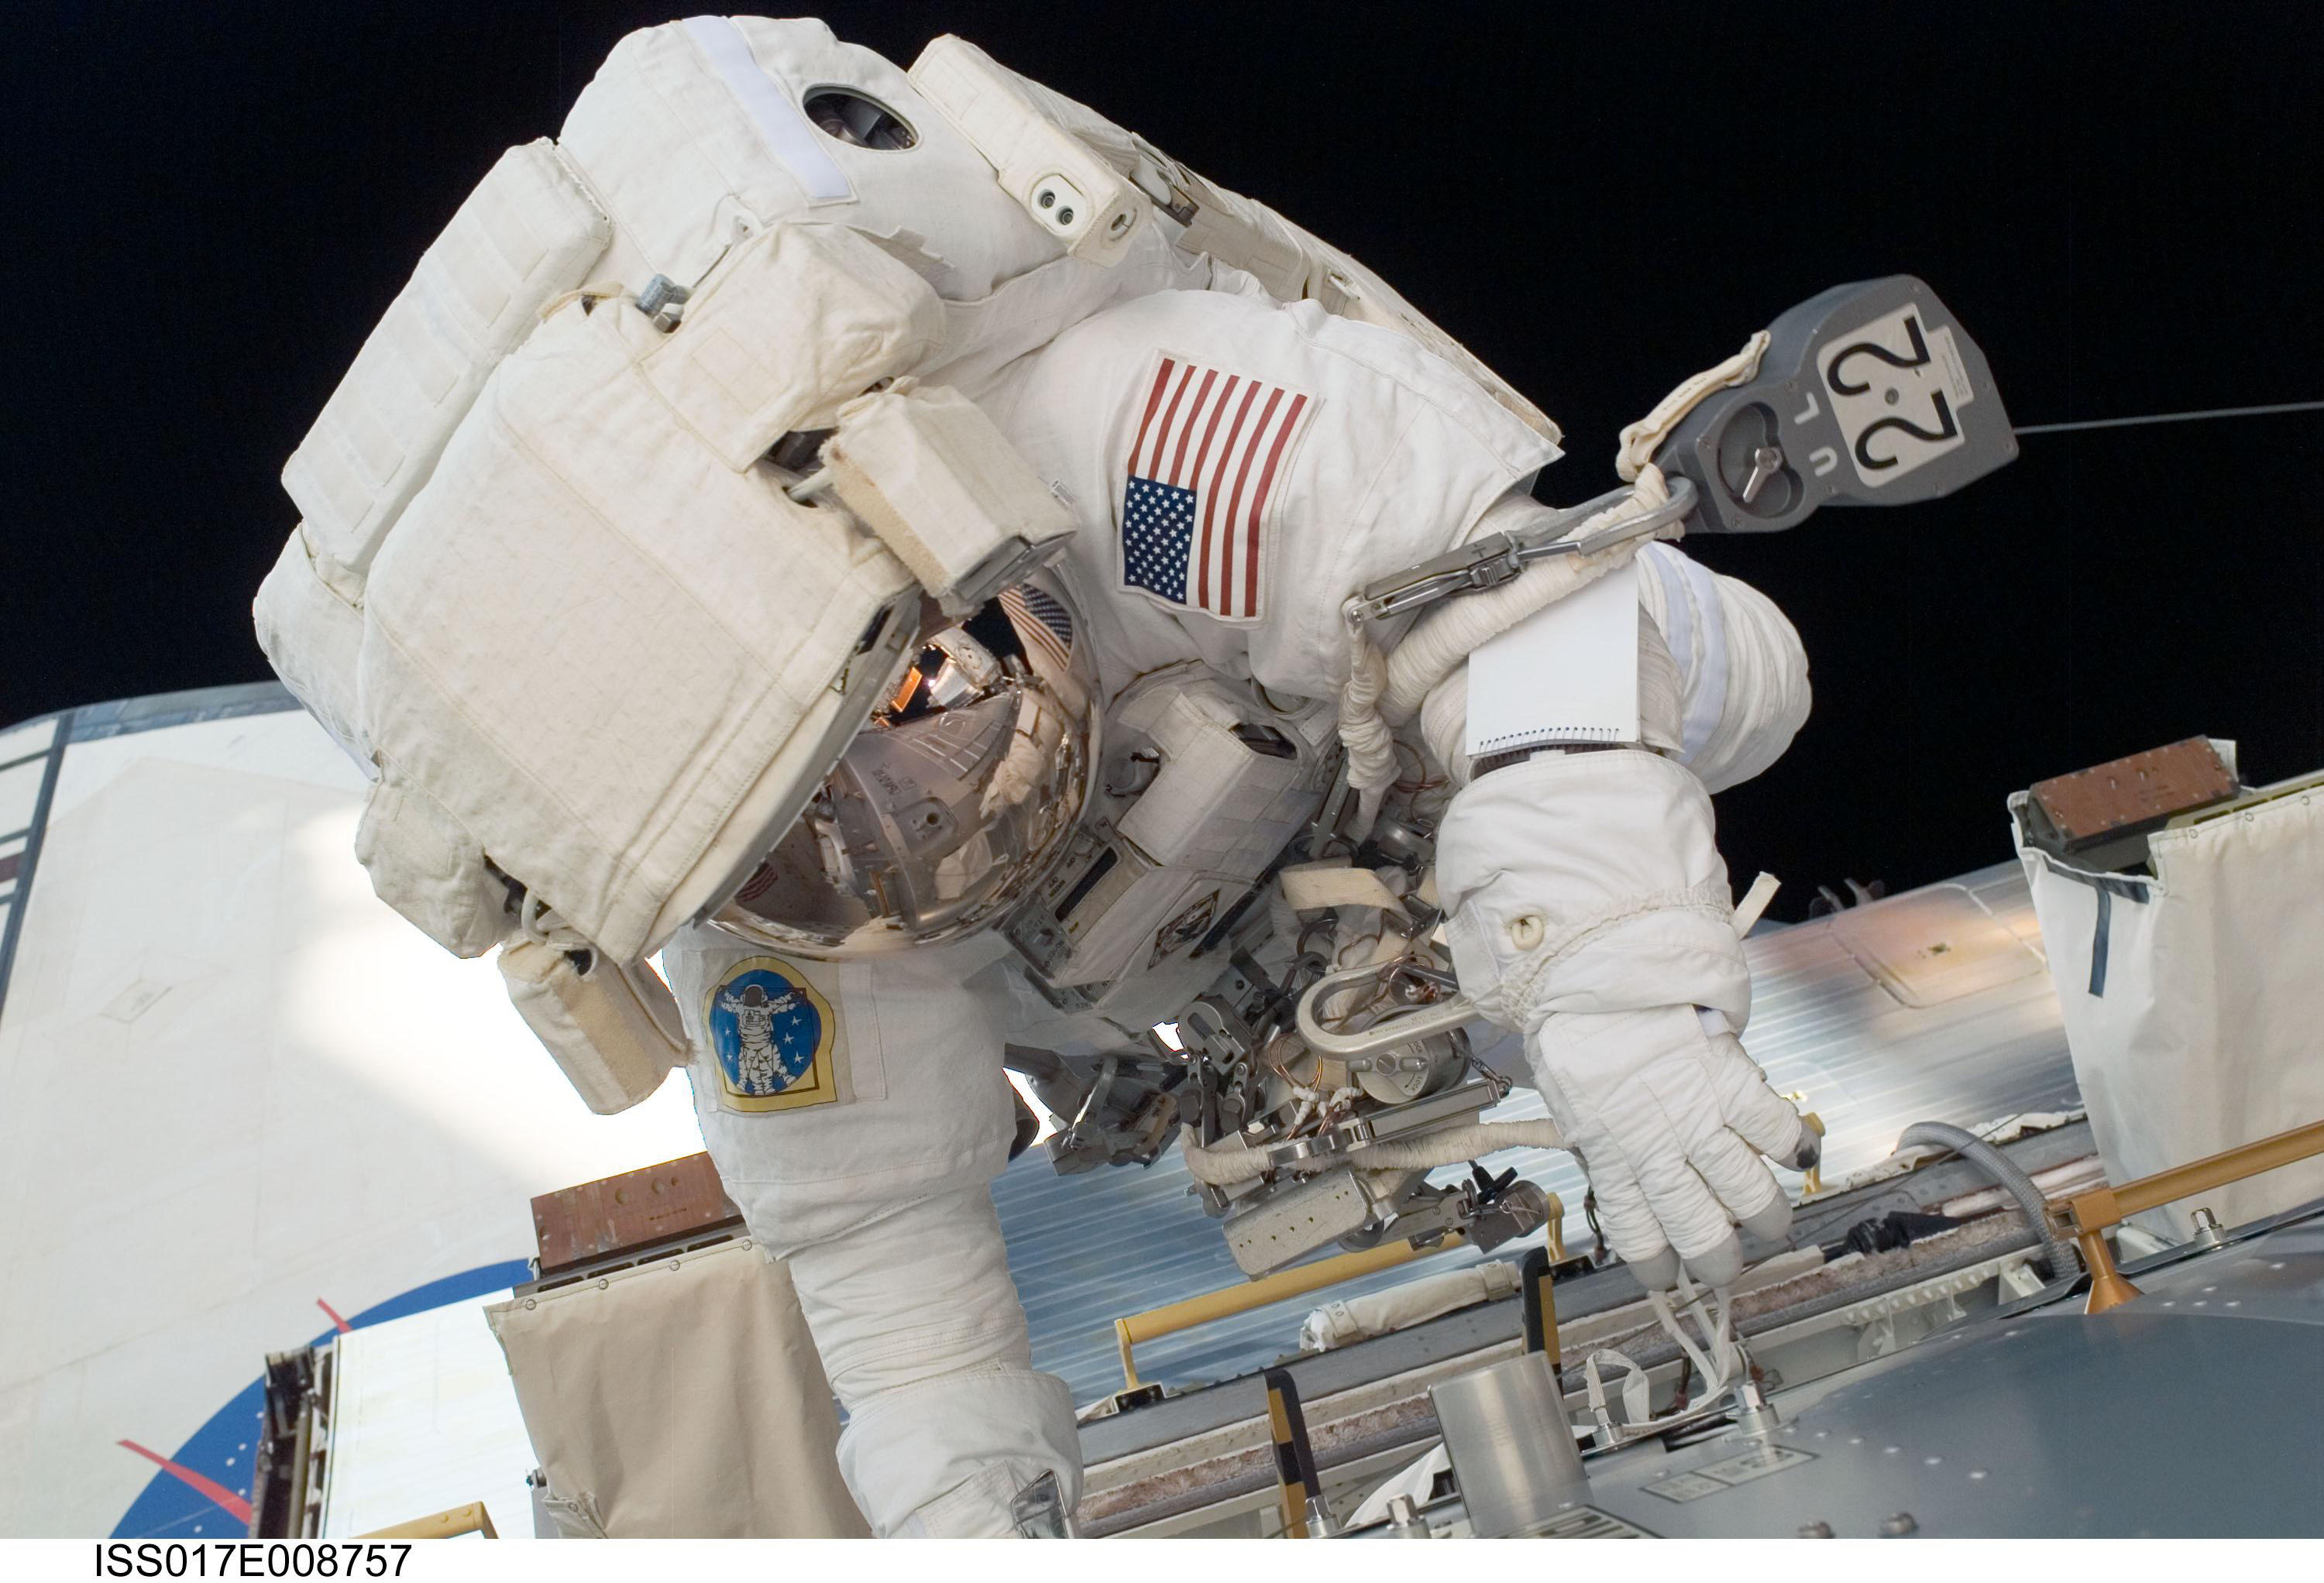 астронавты, Международная космическая станция - обои на рабочий стол